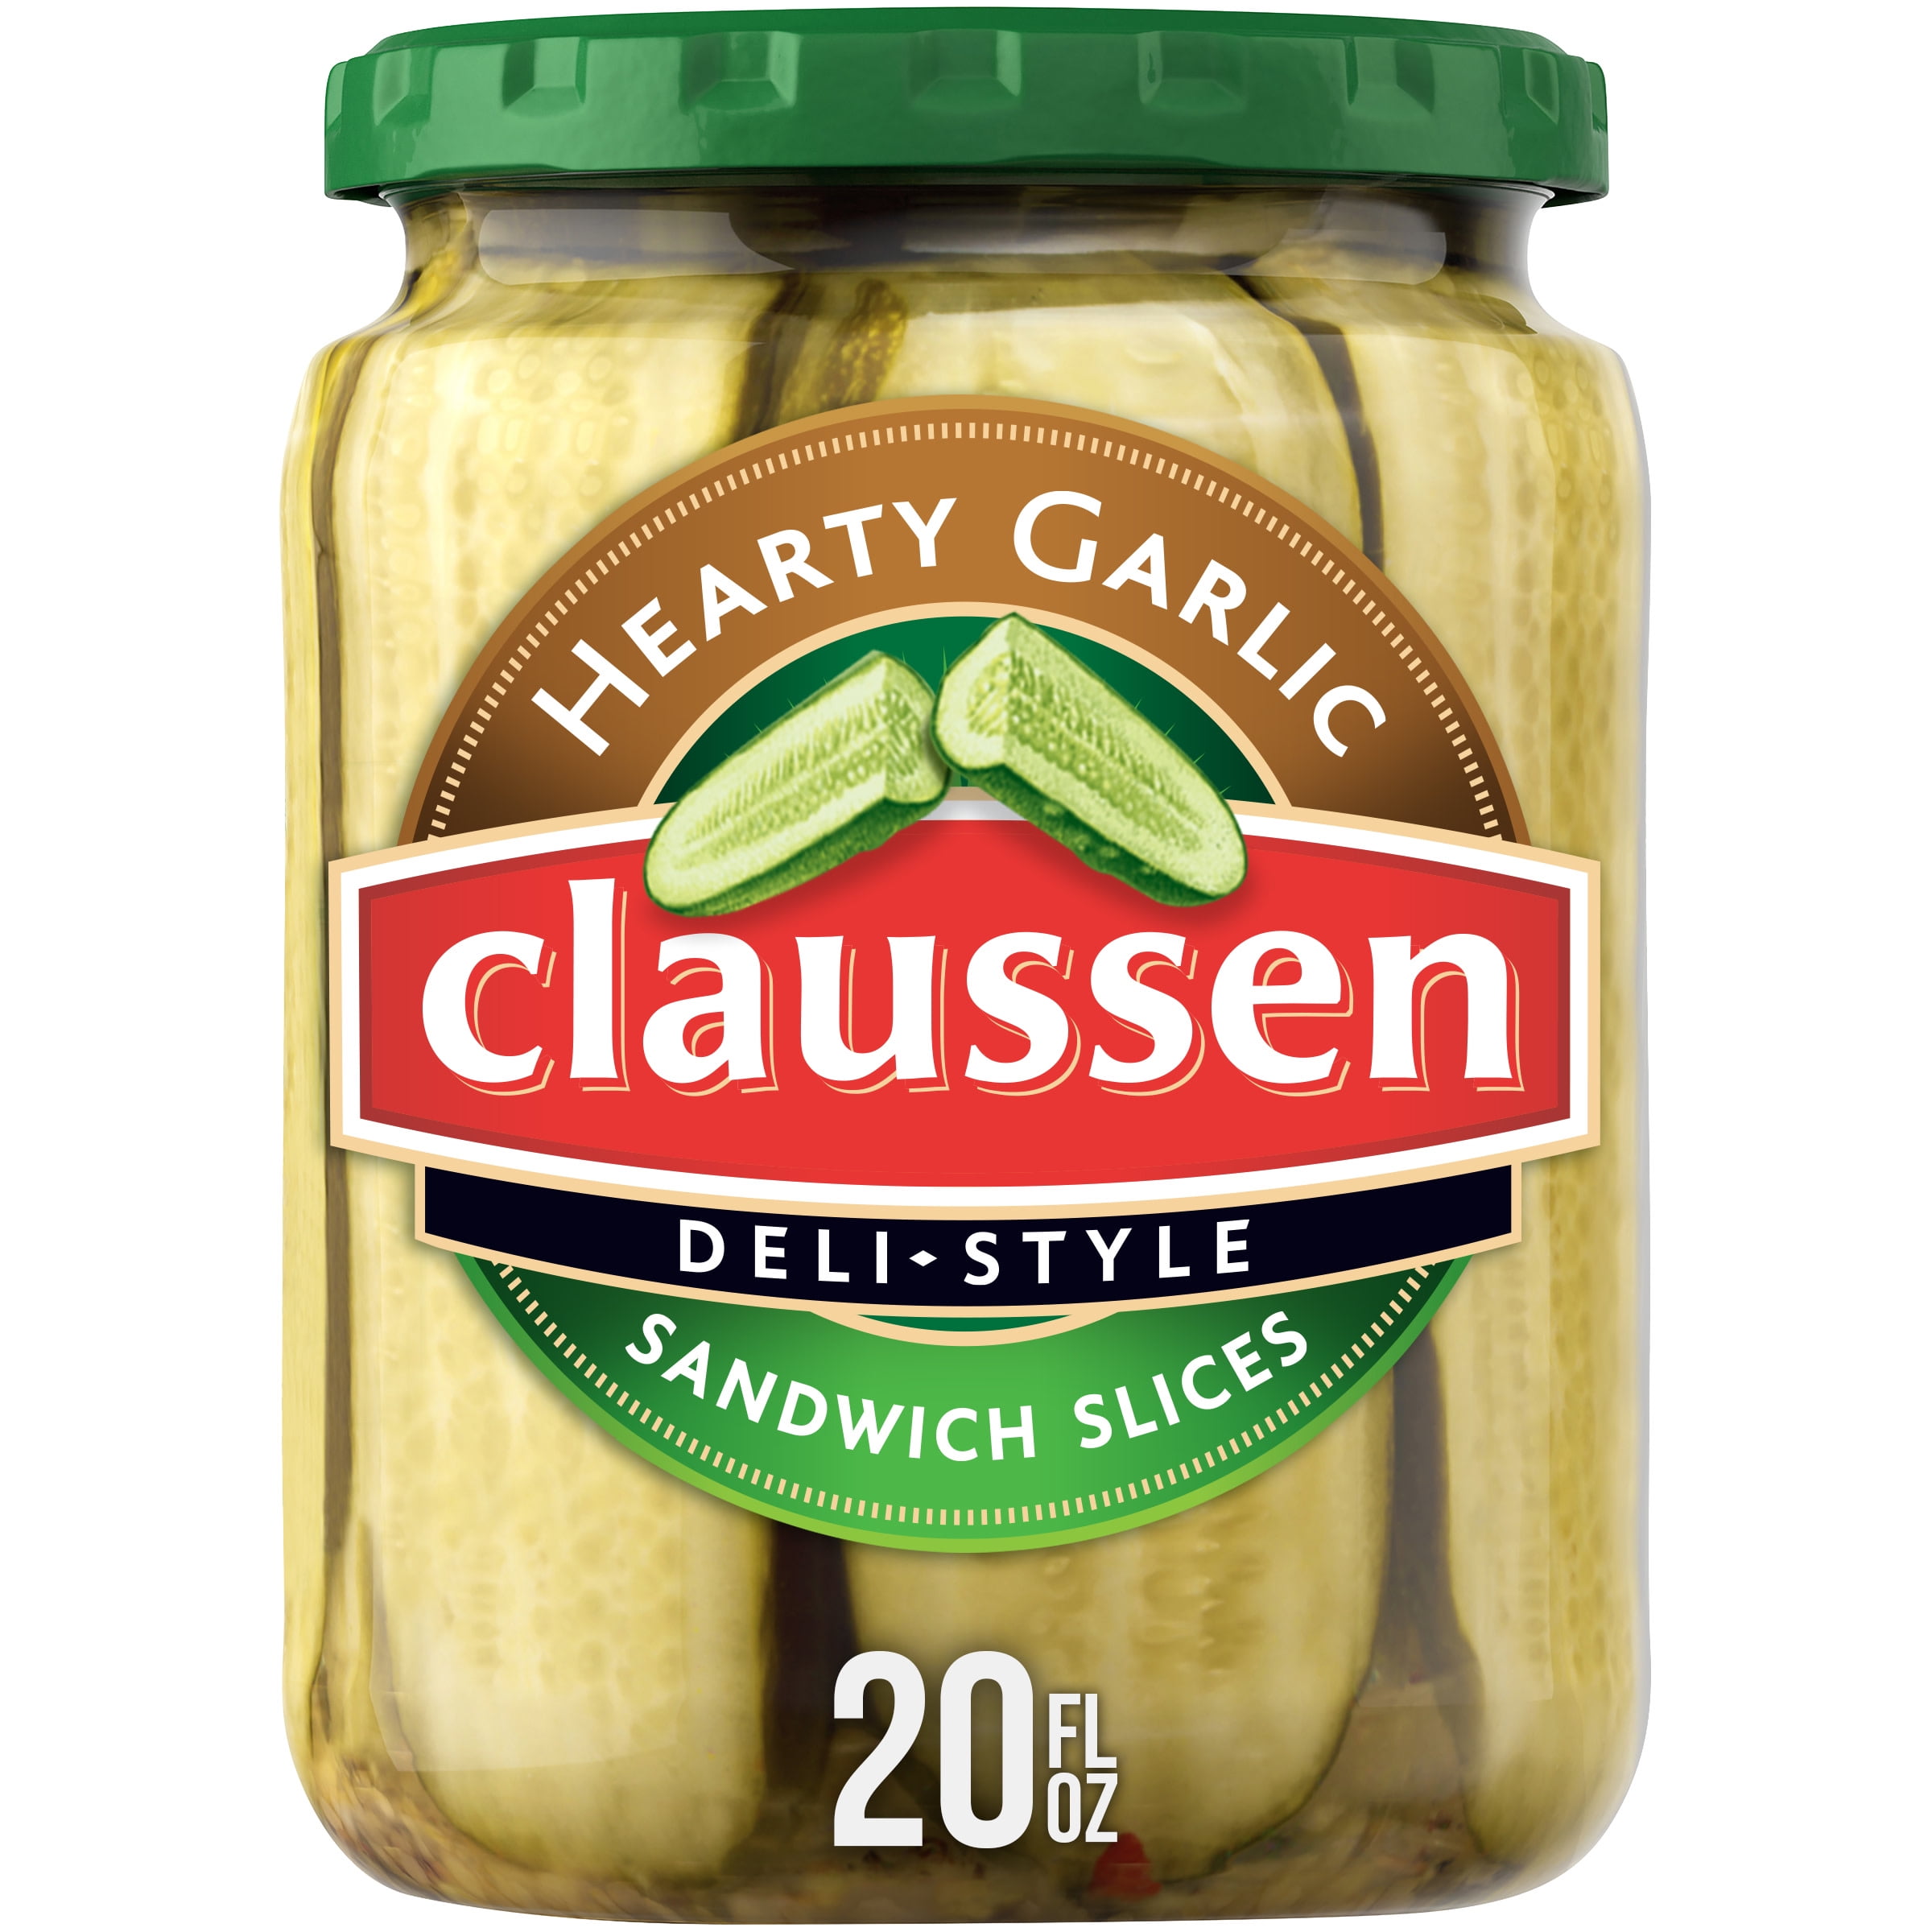 Claussen Hearty Garlic Pickle Sandwich Slices, 20 fl. oz. Jar